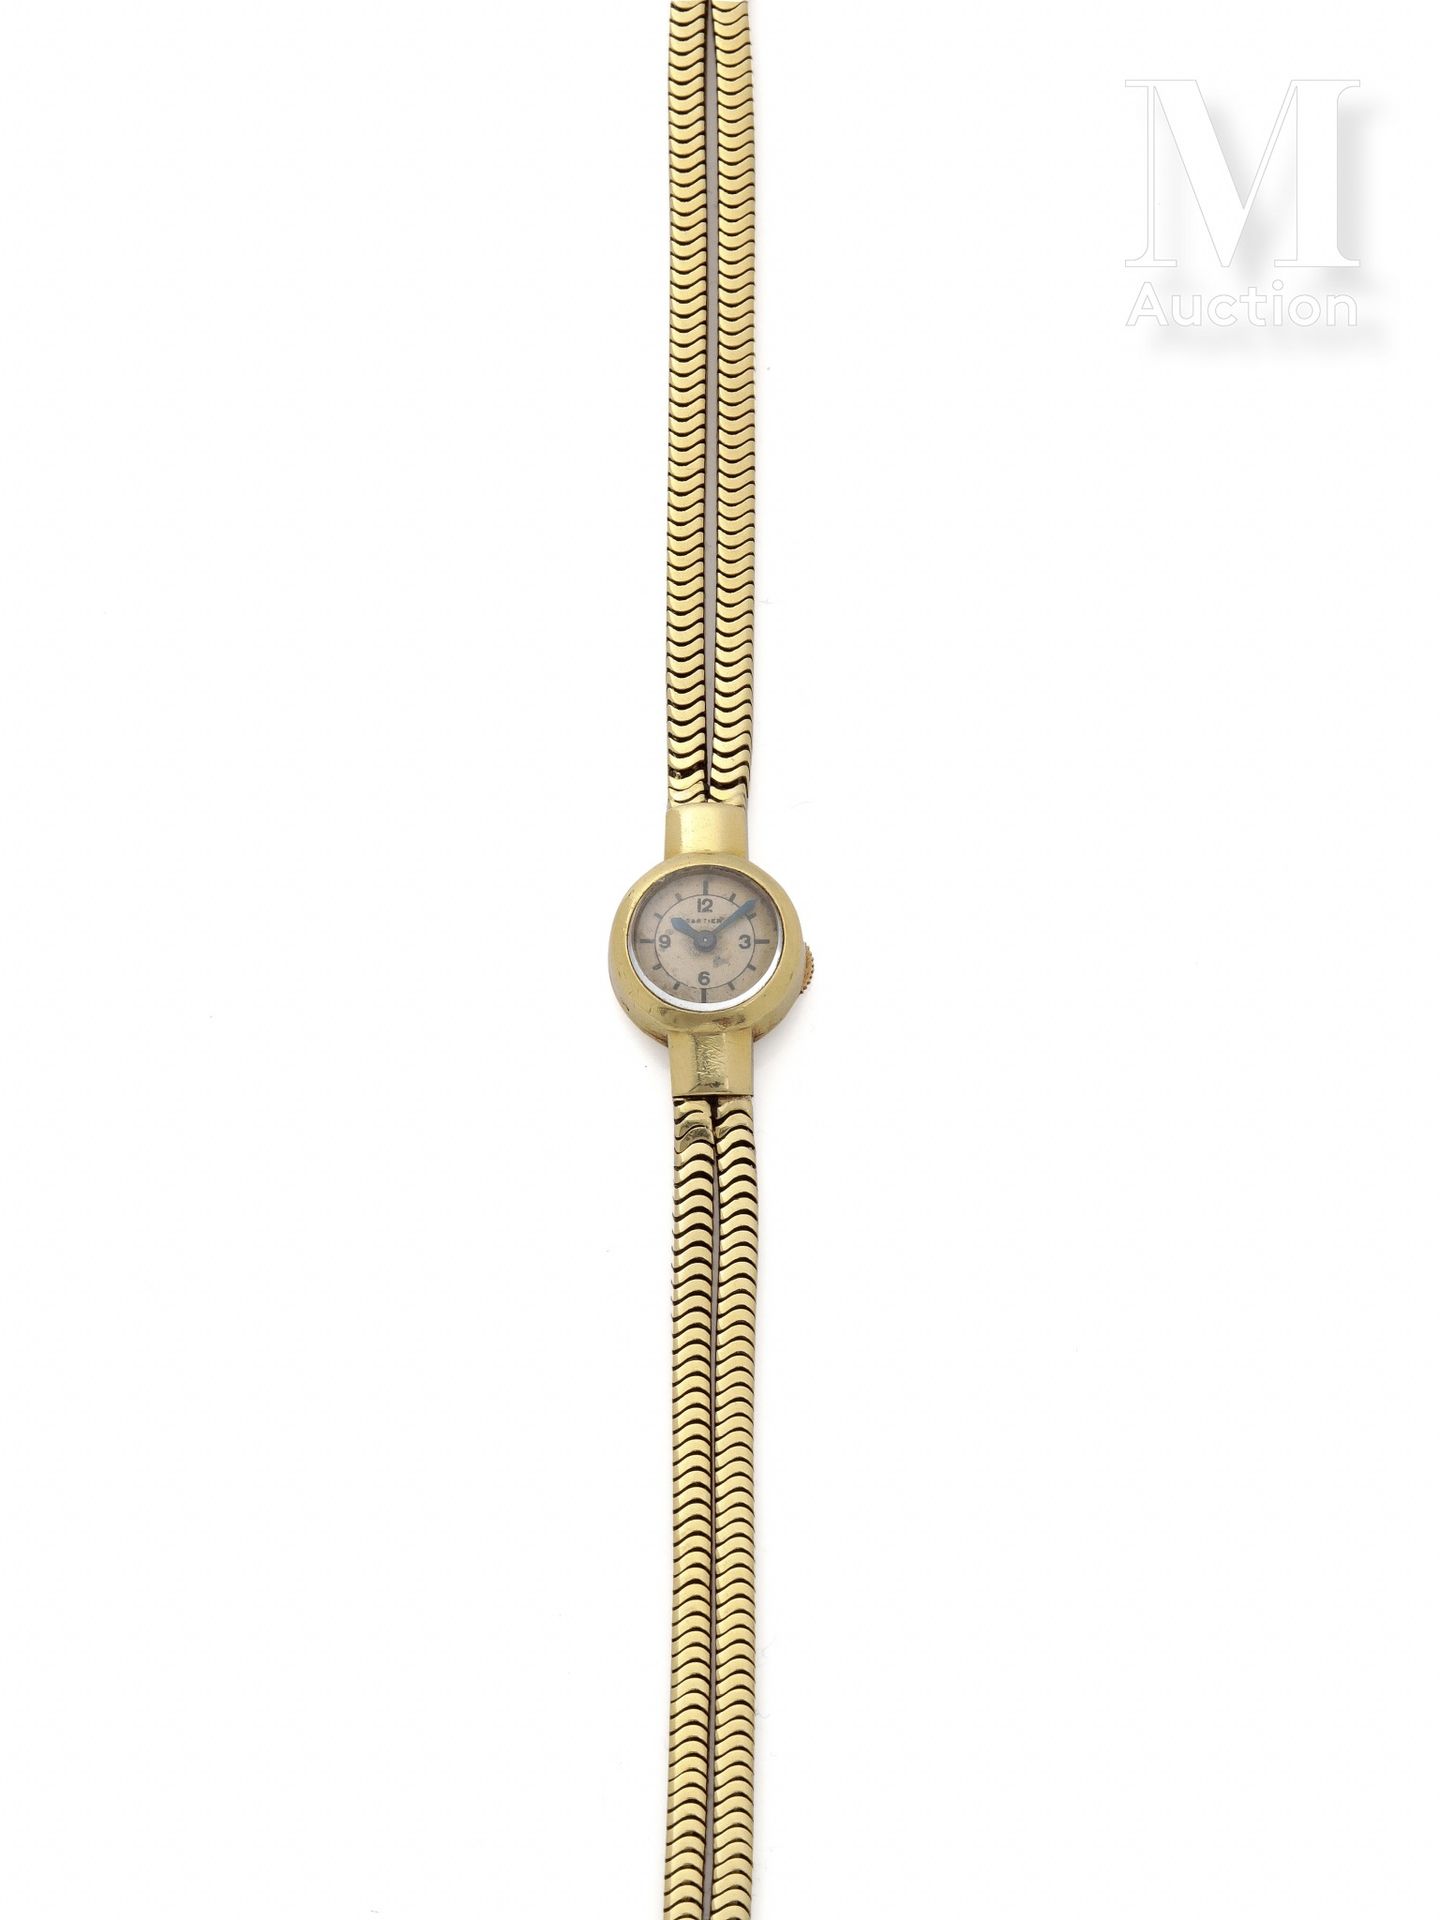 CARTIER Alrededor de 1940

Reloj de señora

Caja de oro de 18 quilates 

Movimie&hellip;